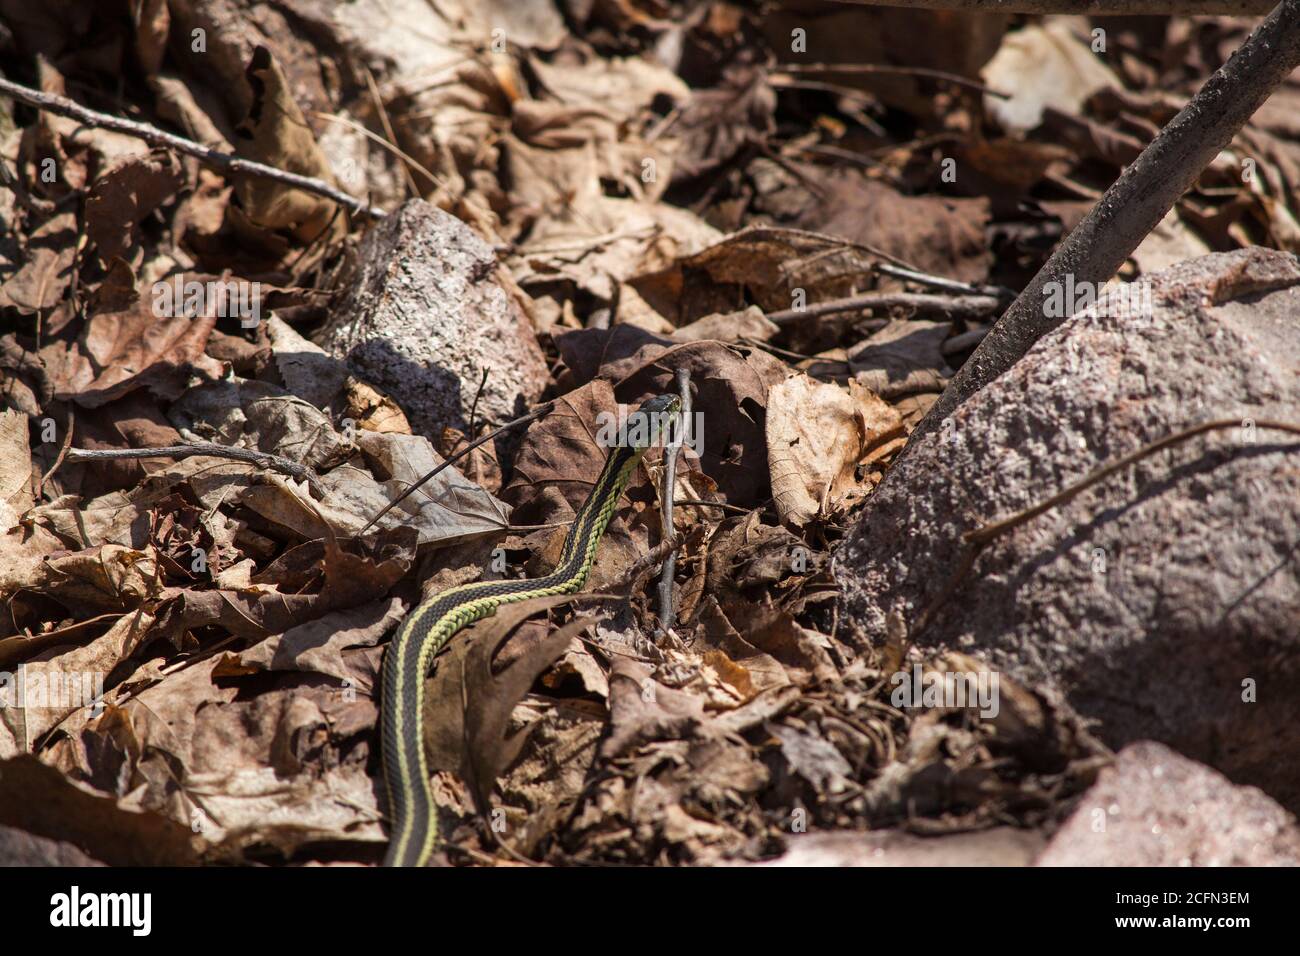 Common garter snake Stock Photo